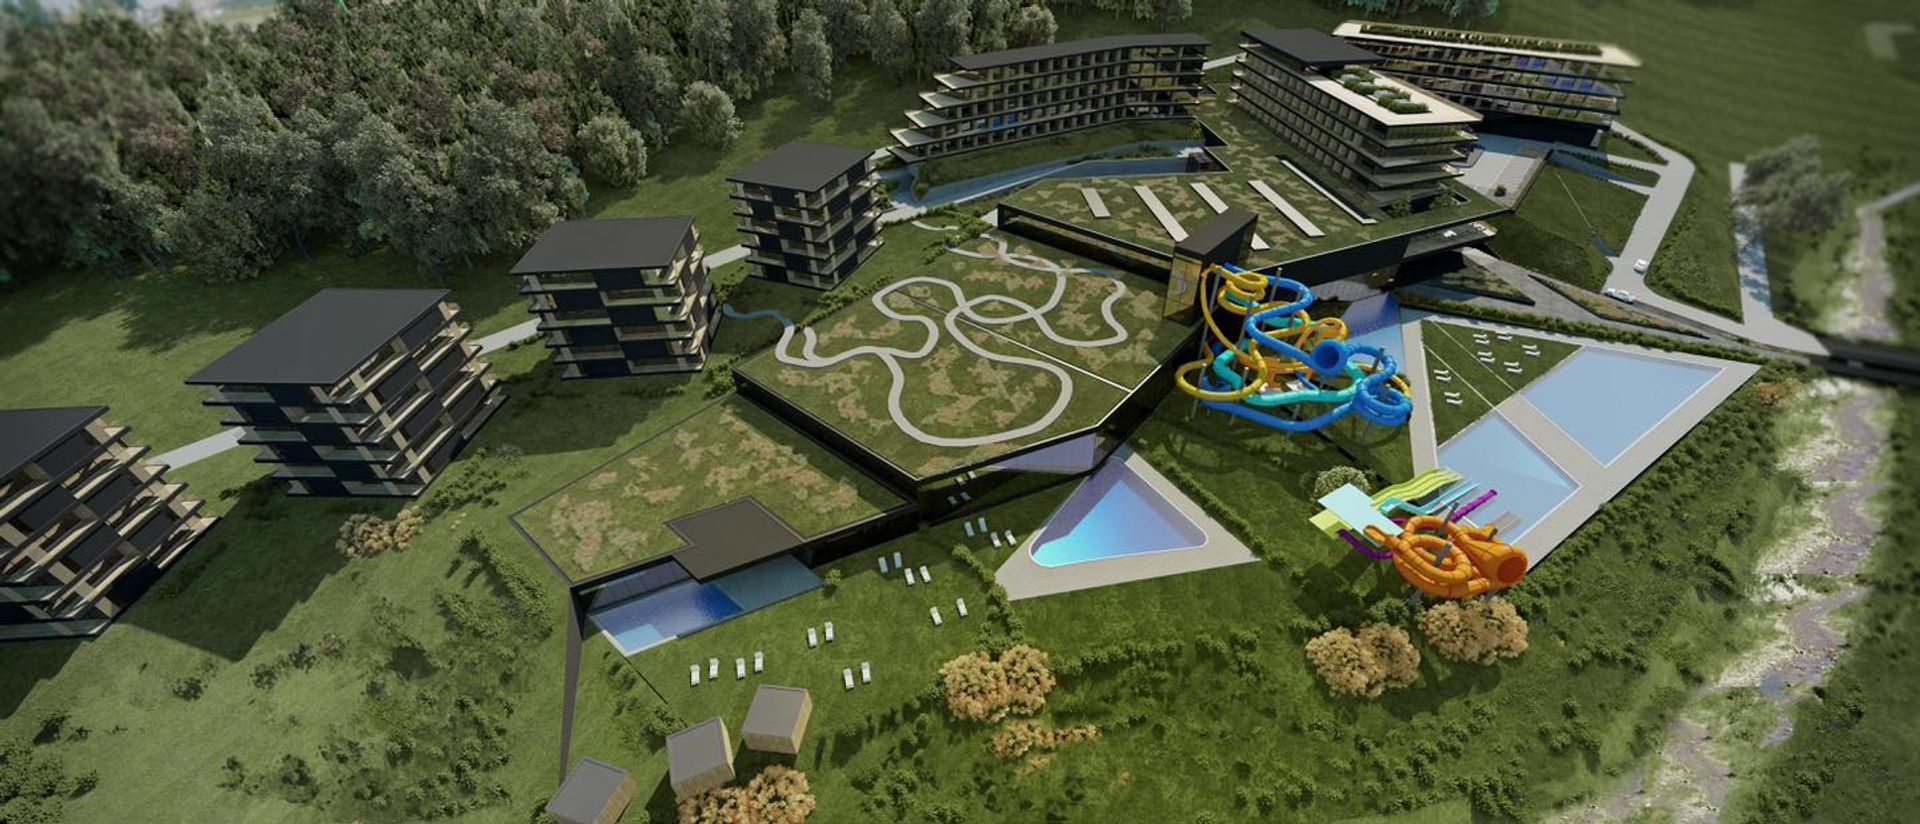 W Krynicy-Zdroju planowana jest budowa wielkiego kompleksu hotelowego z aquaparkiem 